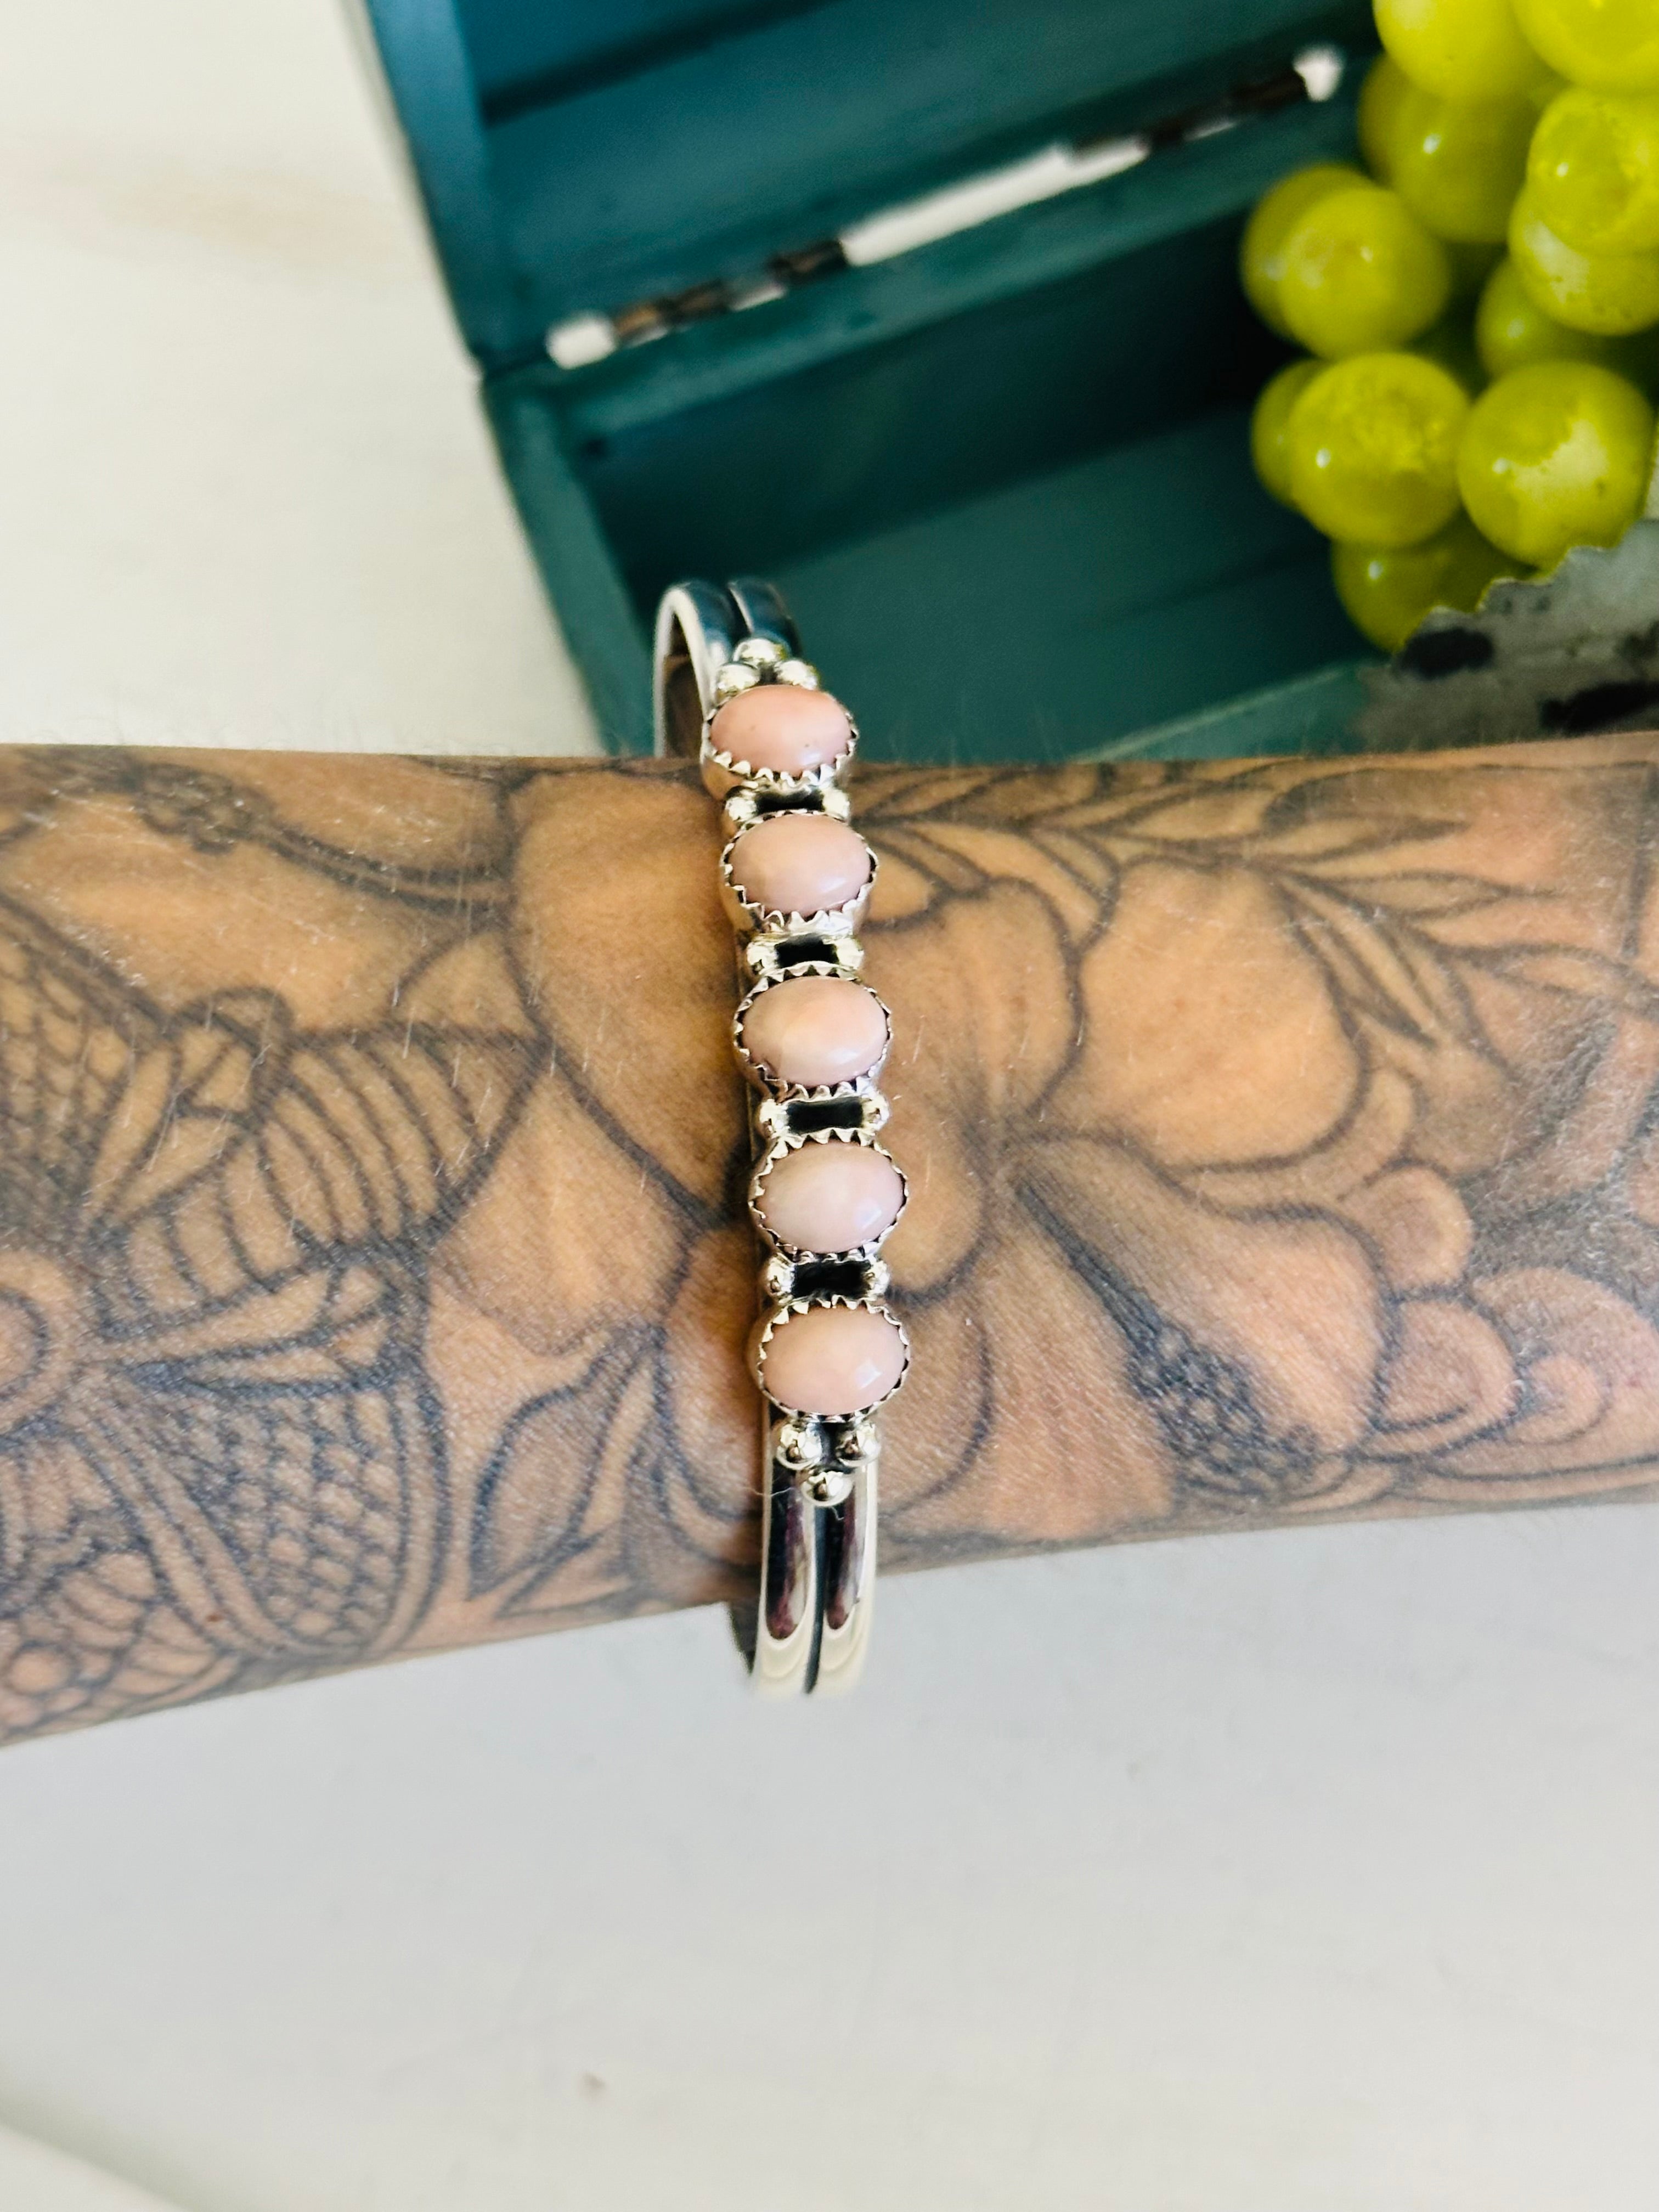 TTD “Jaycee” Peruvian Pink Opal & Sterling Silver Cuff Bracelet